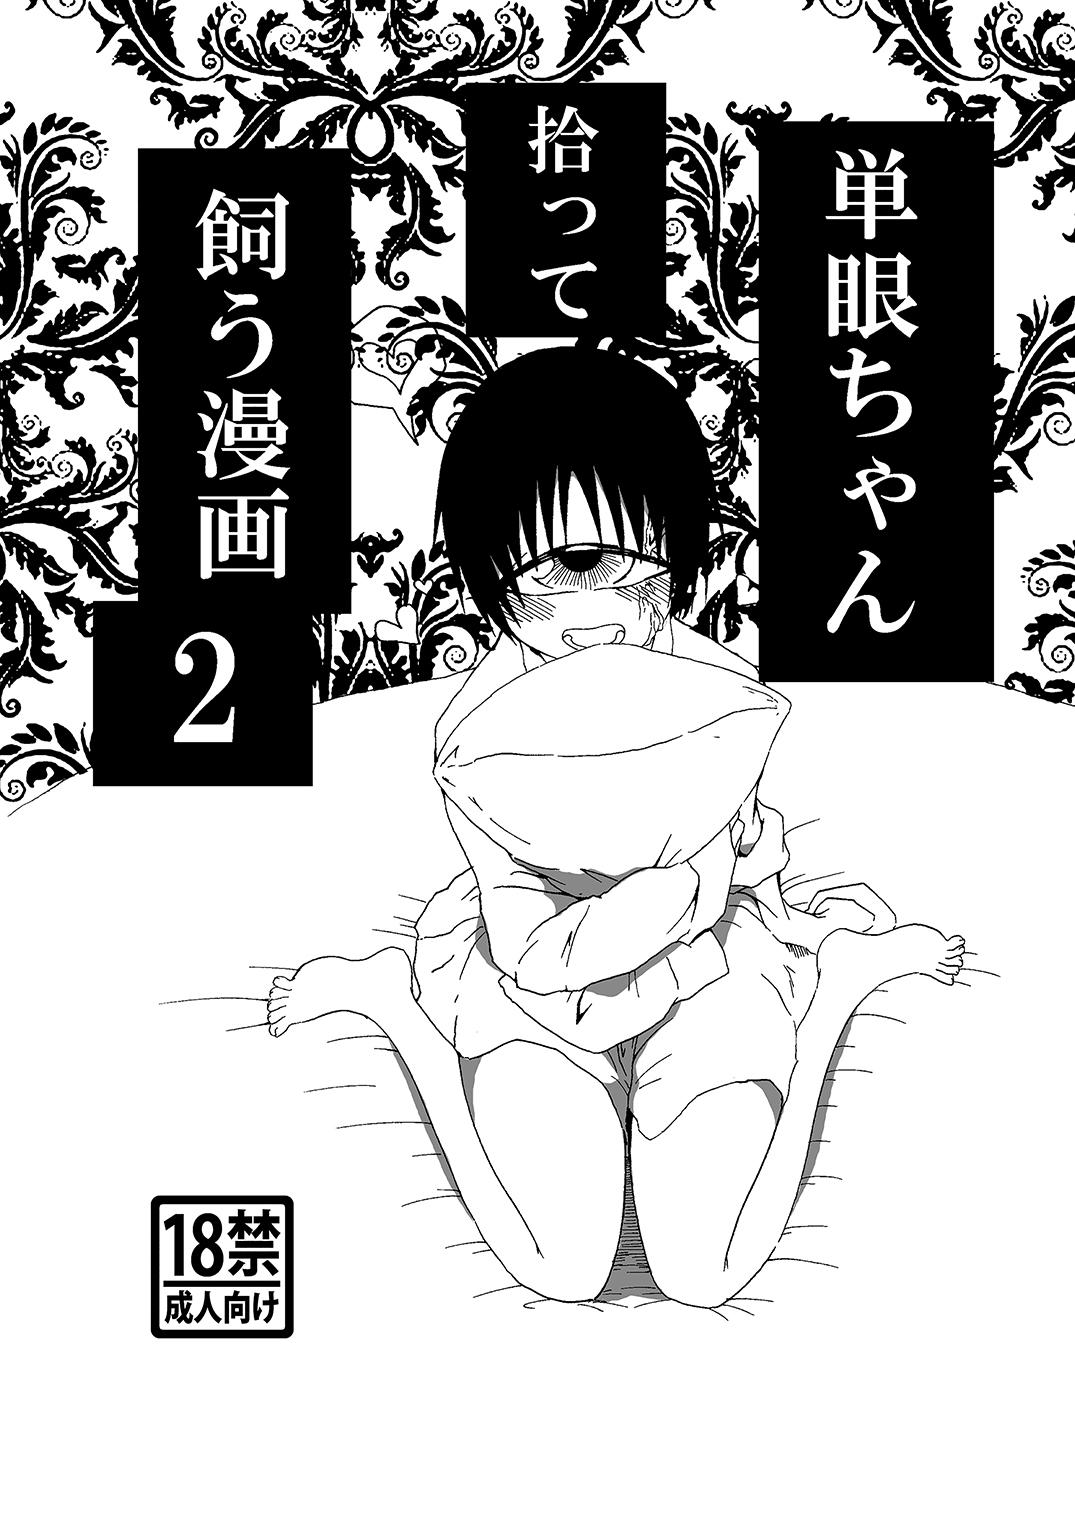 Tangan-chan Hirotte Kau Manga 2 0